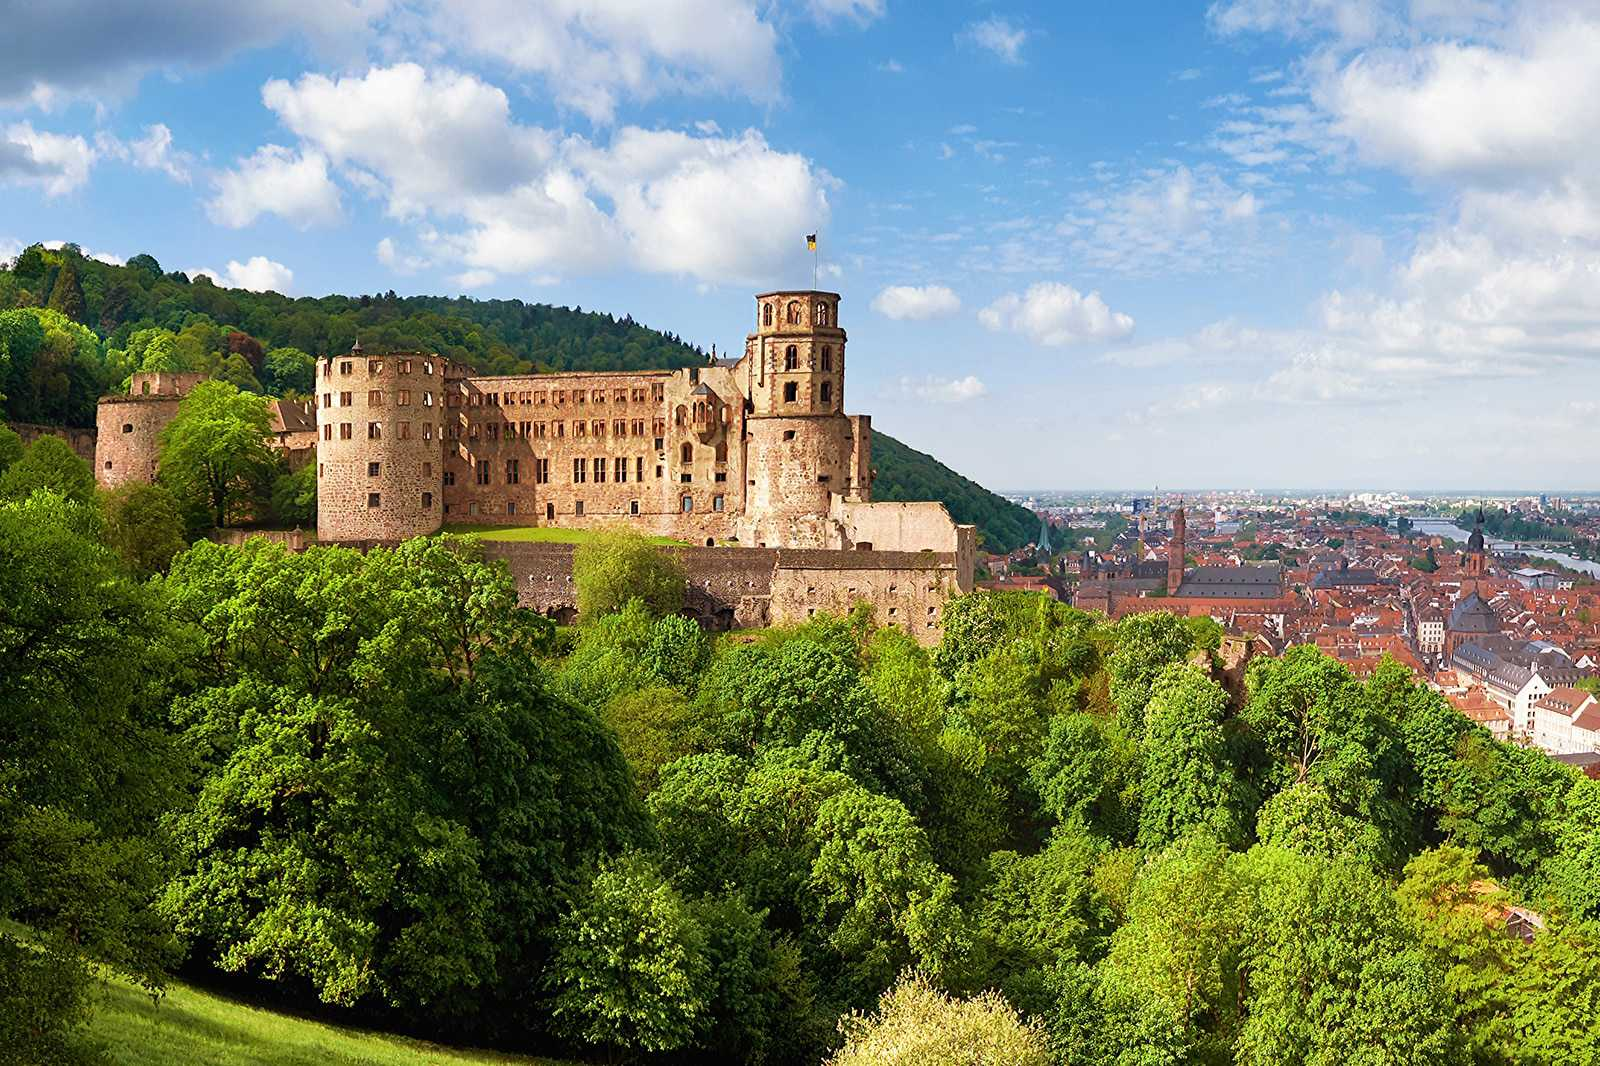 Castello di Heidelberg